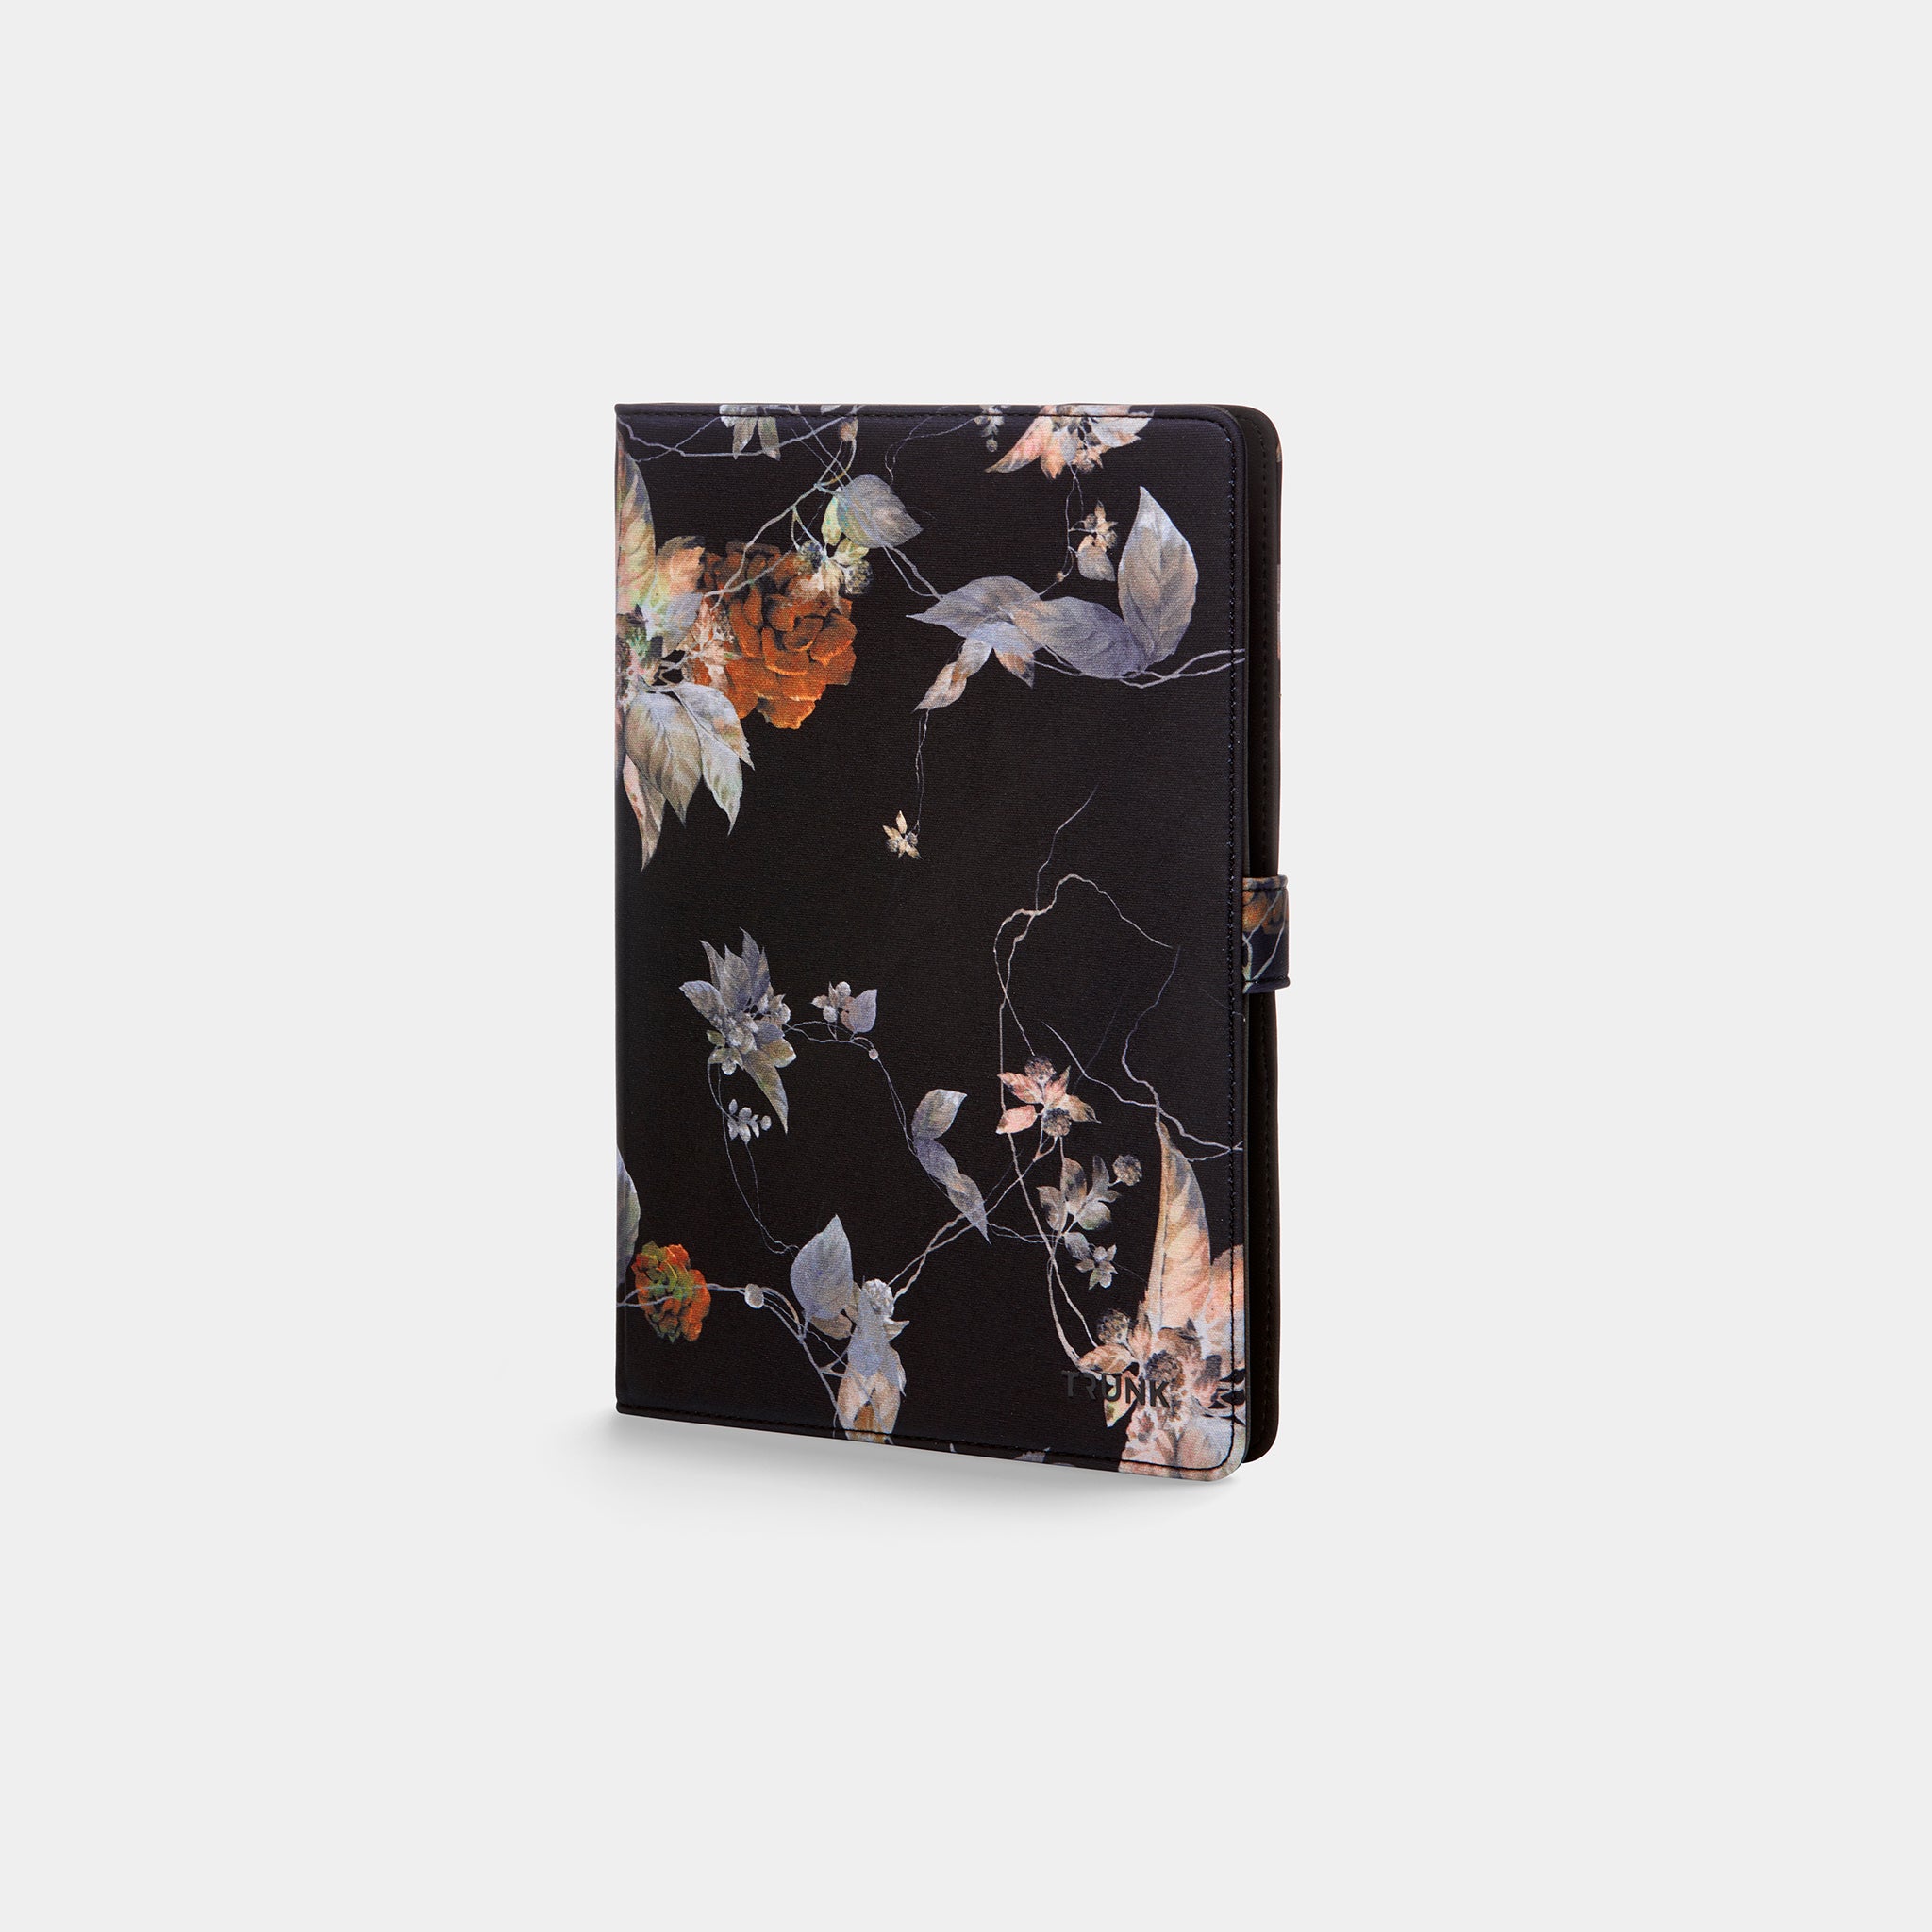 Black Flower Universal Tablet - One size - Neoprene Sleeve